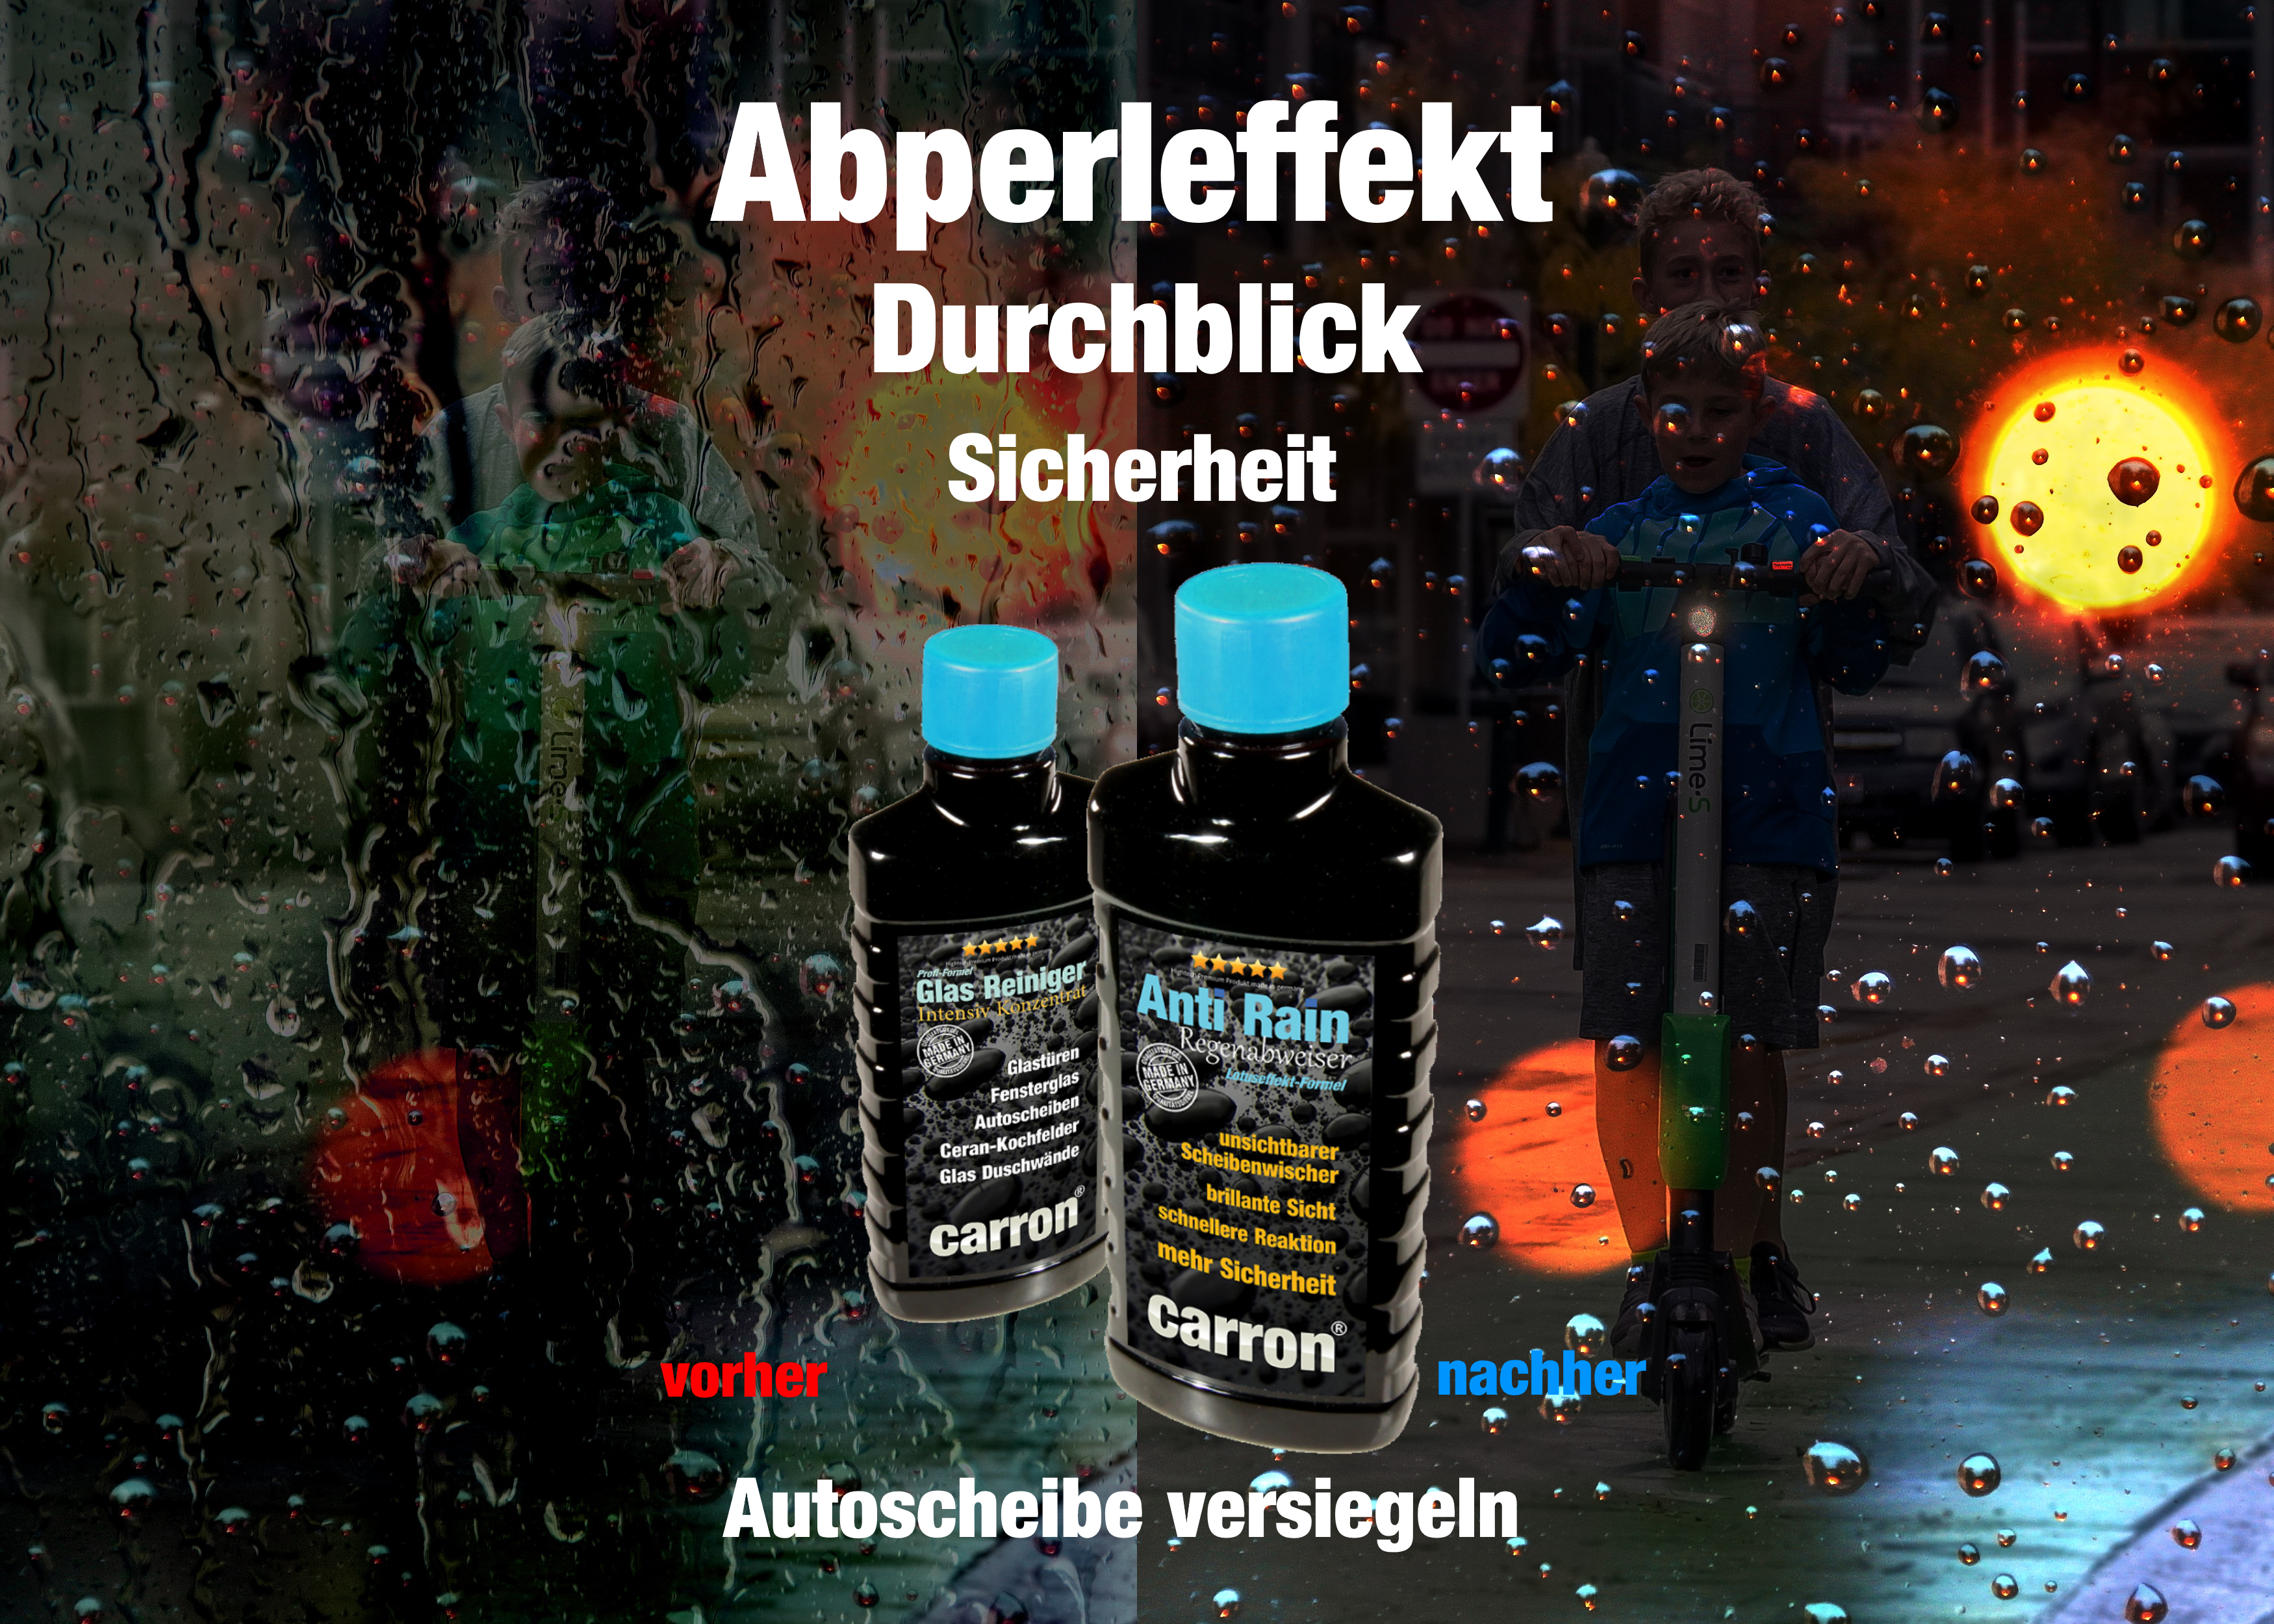 Anti Rain Regenabweiser - Frontscheibe mit Abperleffekt versiegeln